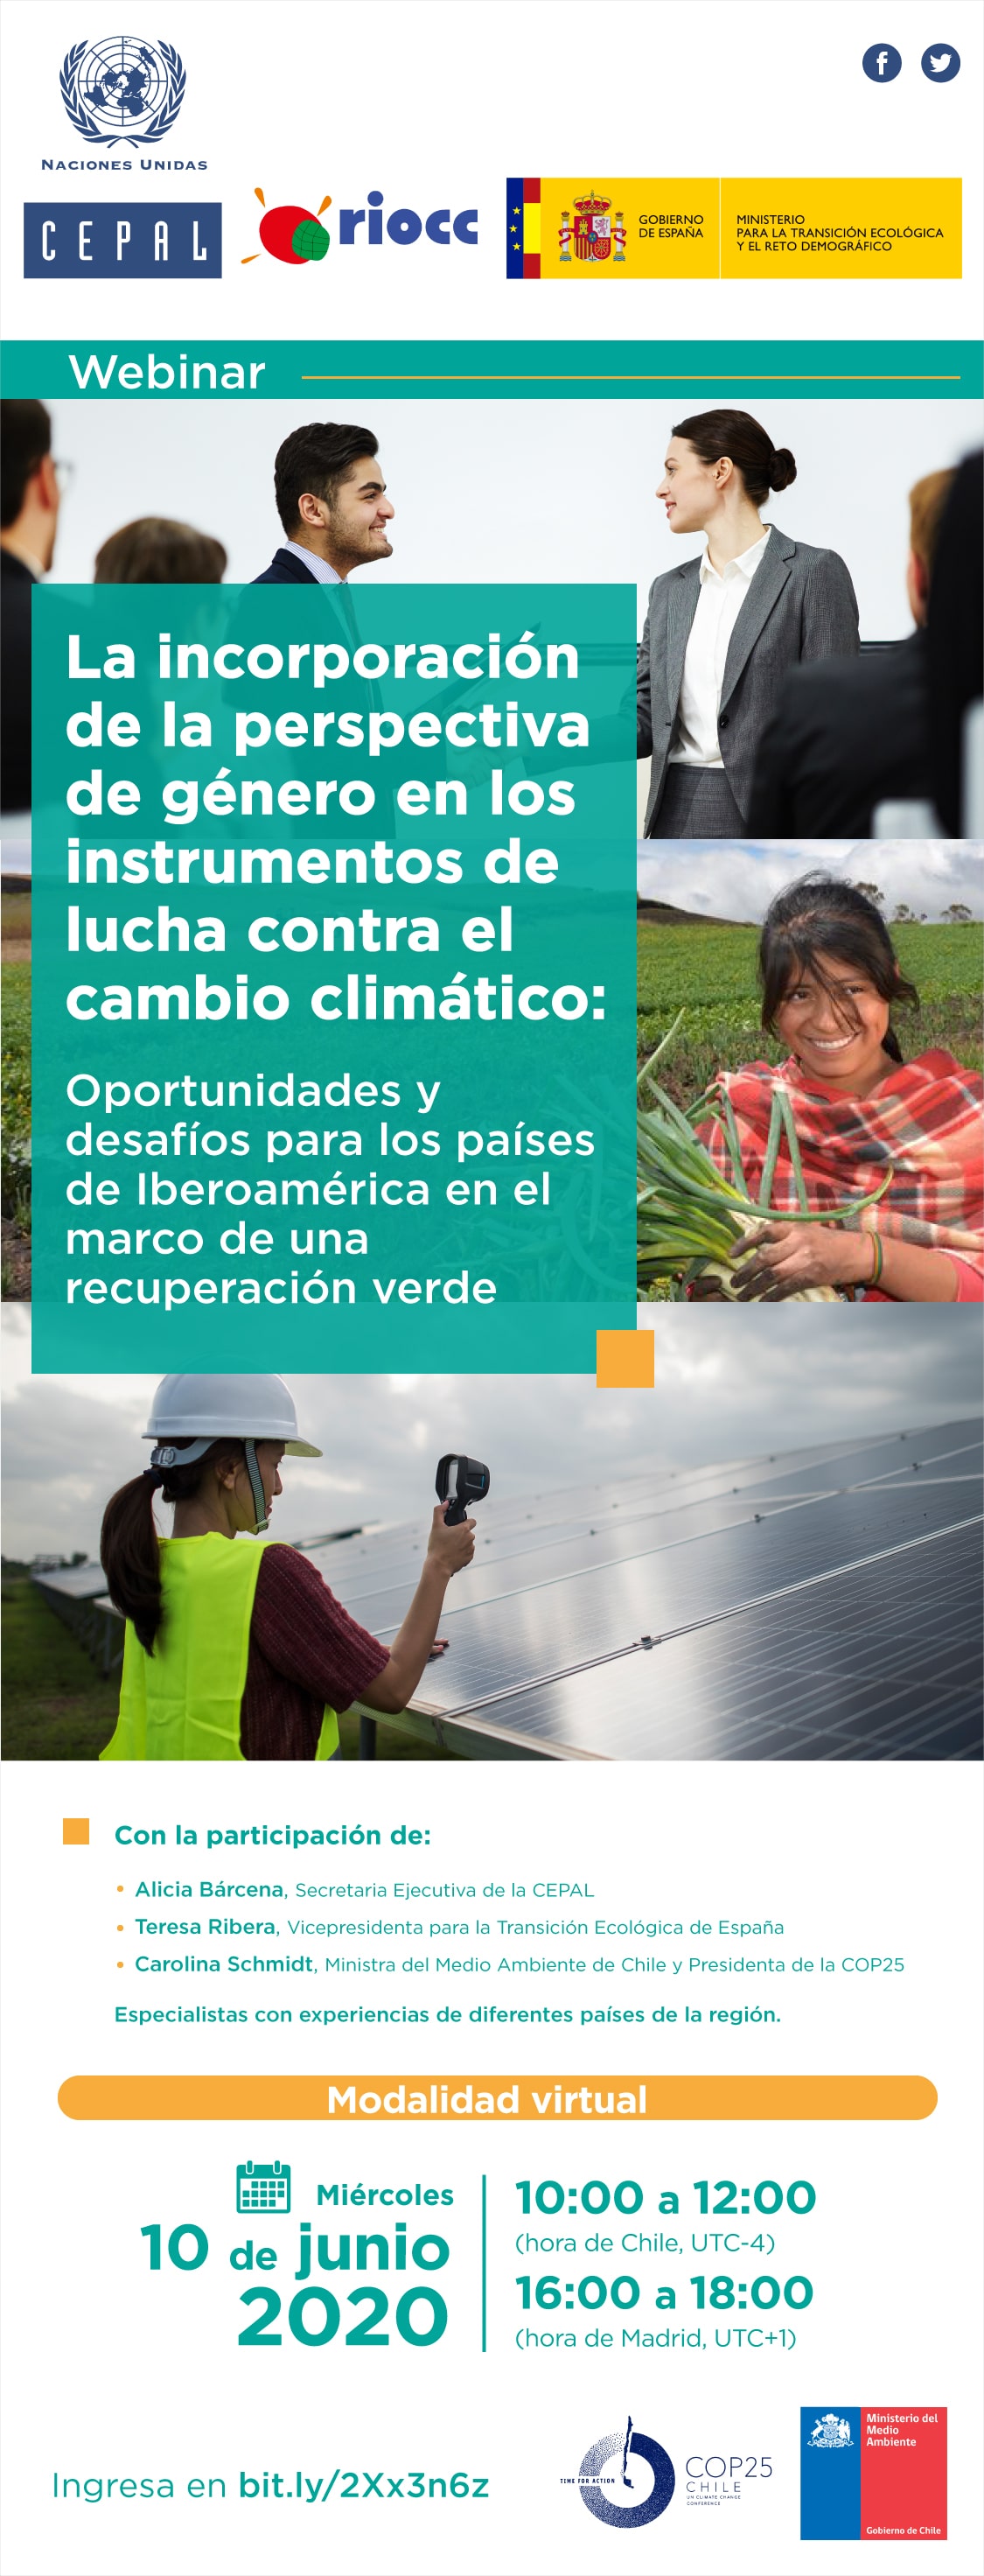 Webinar “La incorporación de la perspectiva de género en los instrumentos de lucha contra el cambio climático: oportunidades y desafíos para Iberoamérica en el marco de una recuperación verde”